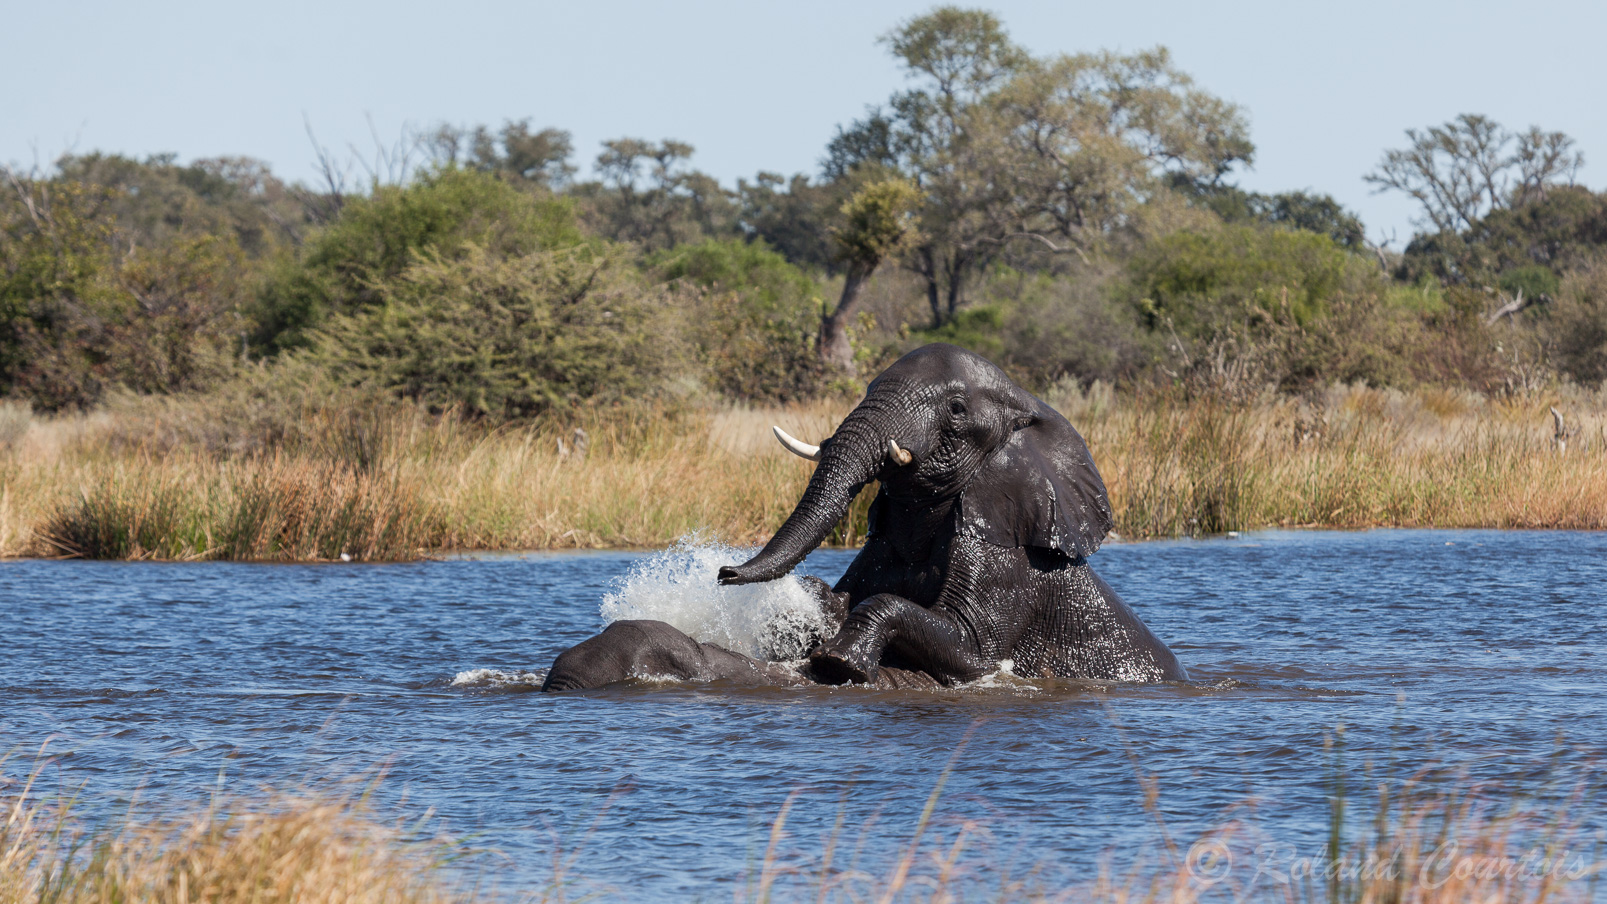 Ces éléphants adorent jouer ensemble dans l'eau.